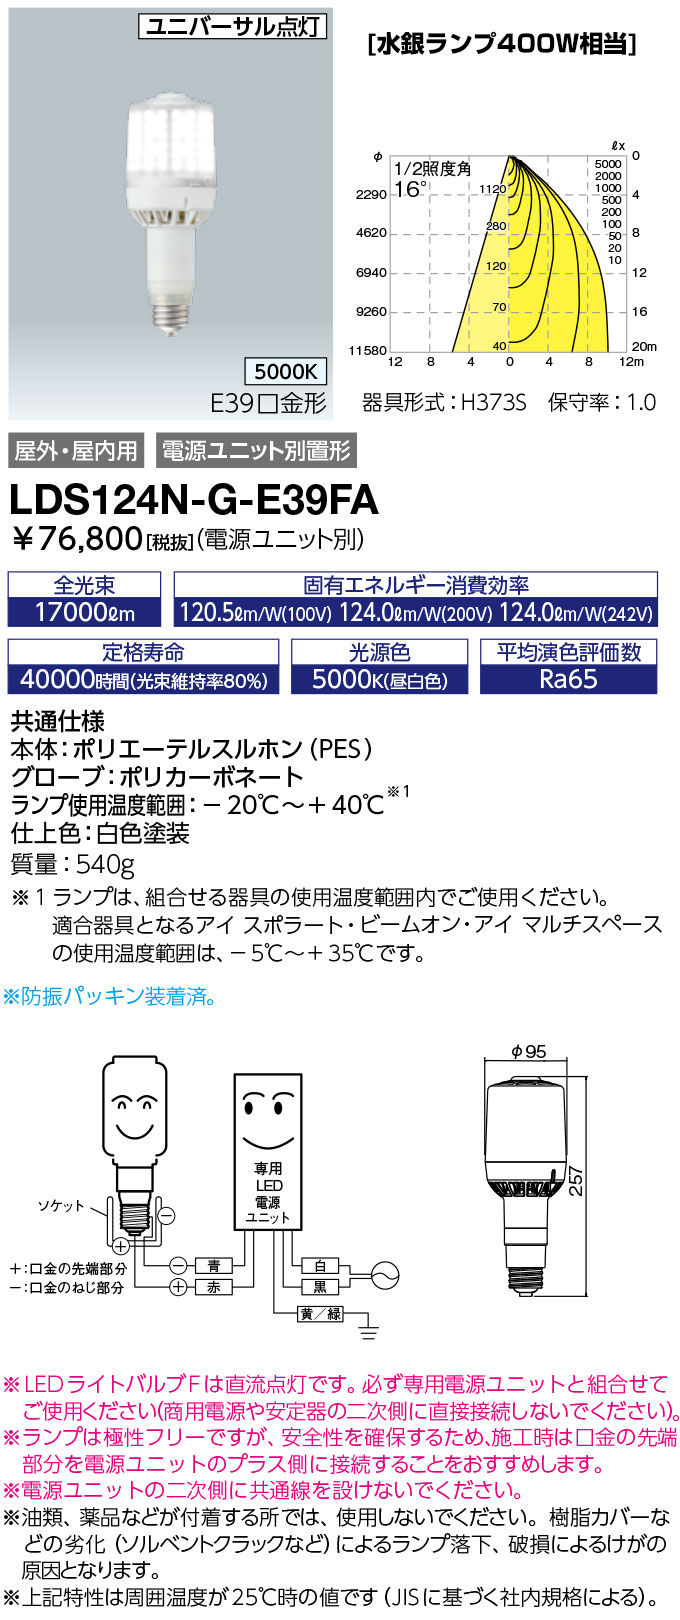 LDS124N-G-E39FA ランプ レディオック LEDライトバルブF水銀ランプ400W相当 極性フリー E39口金 124W 昼白色 岩崎電気 ランプ タカラショップ